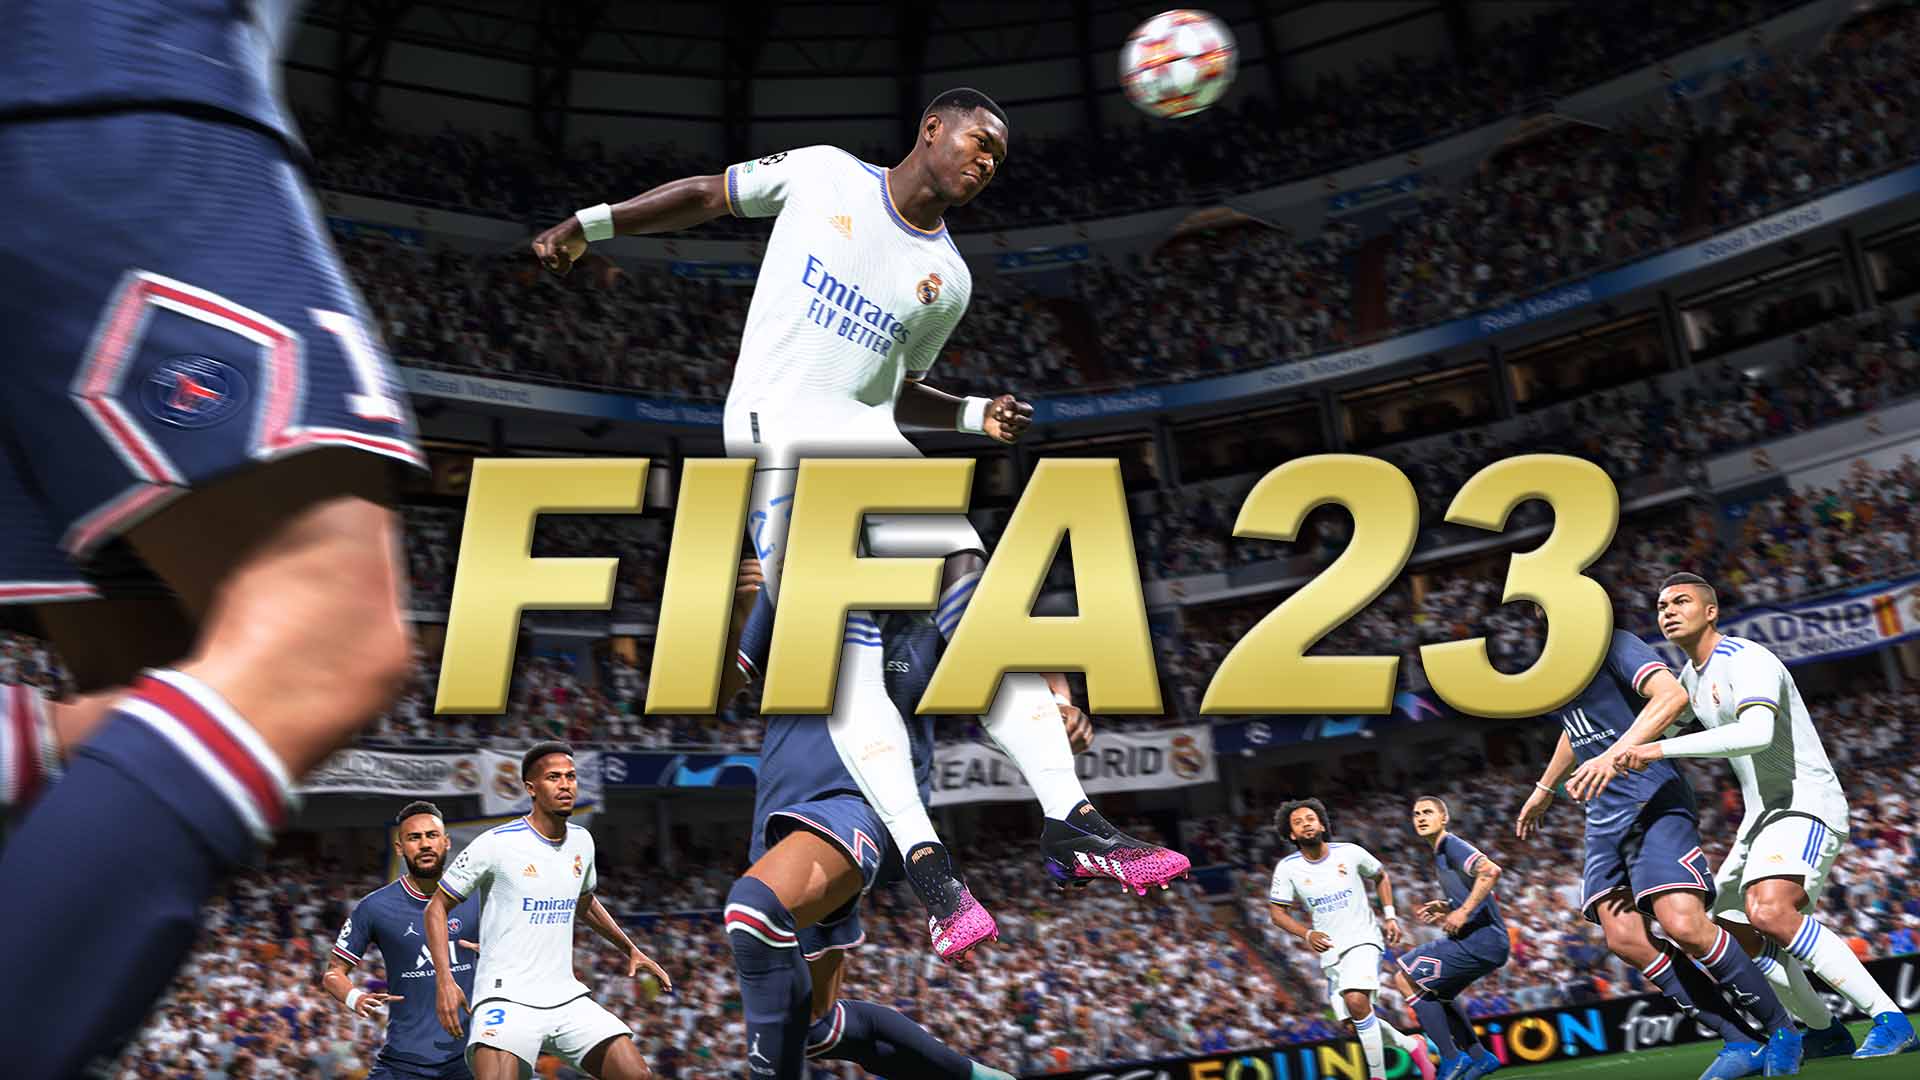 Bilder zu FIFA 23: Release Date – Ende September soll es laut Brancheninsider losgehen